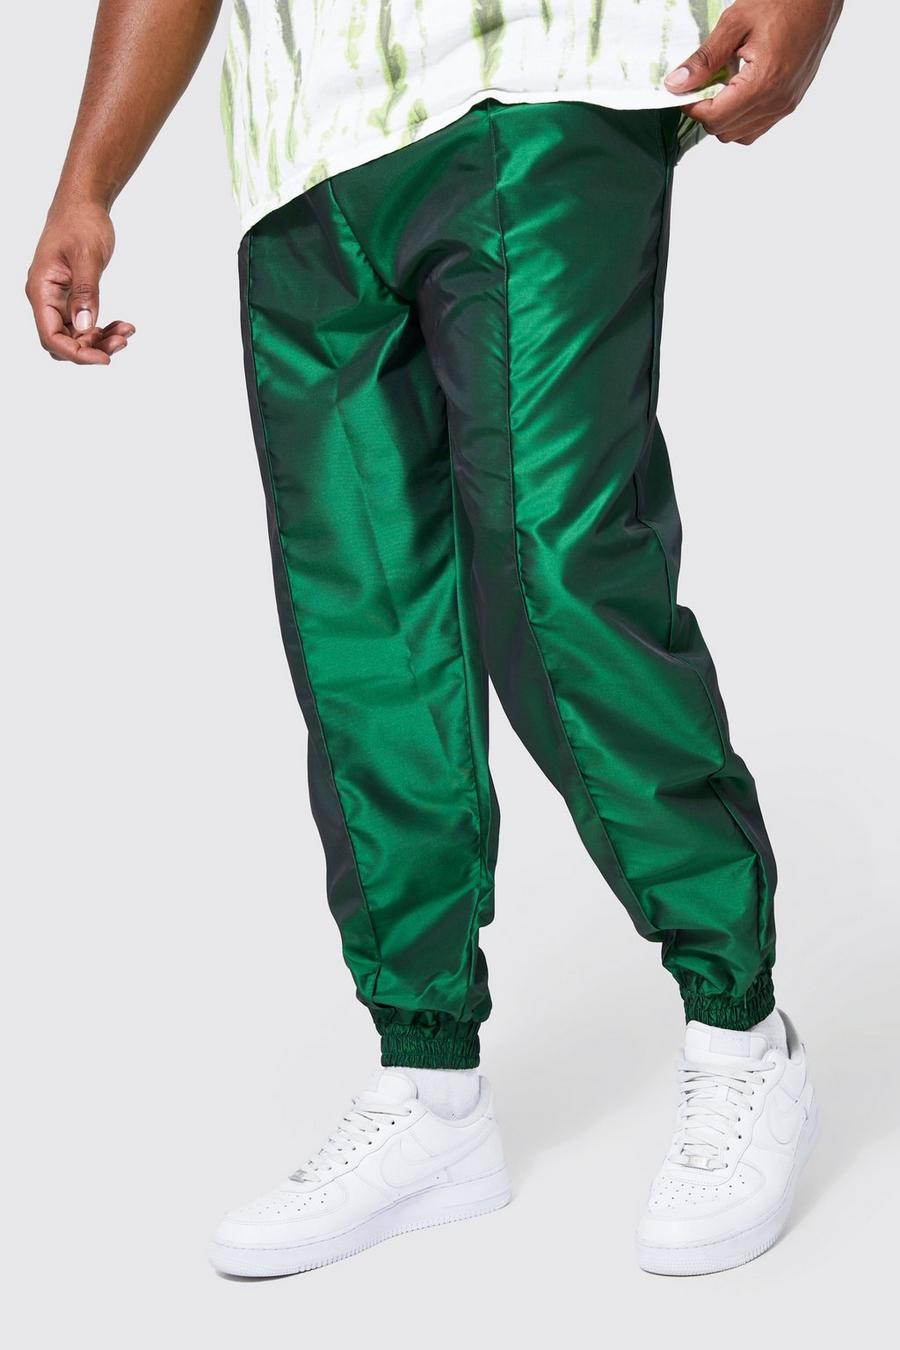 Green gerde מכנסי דגמ"ח מחליפי צבעים בגזרה רגילה למידות גדולות image number 1